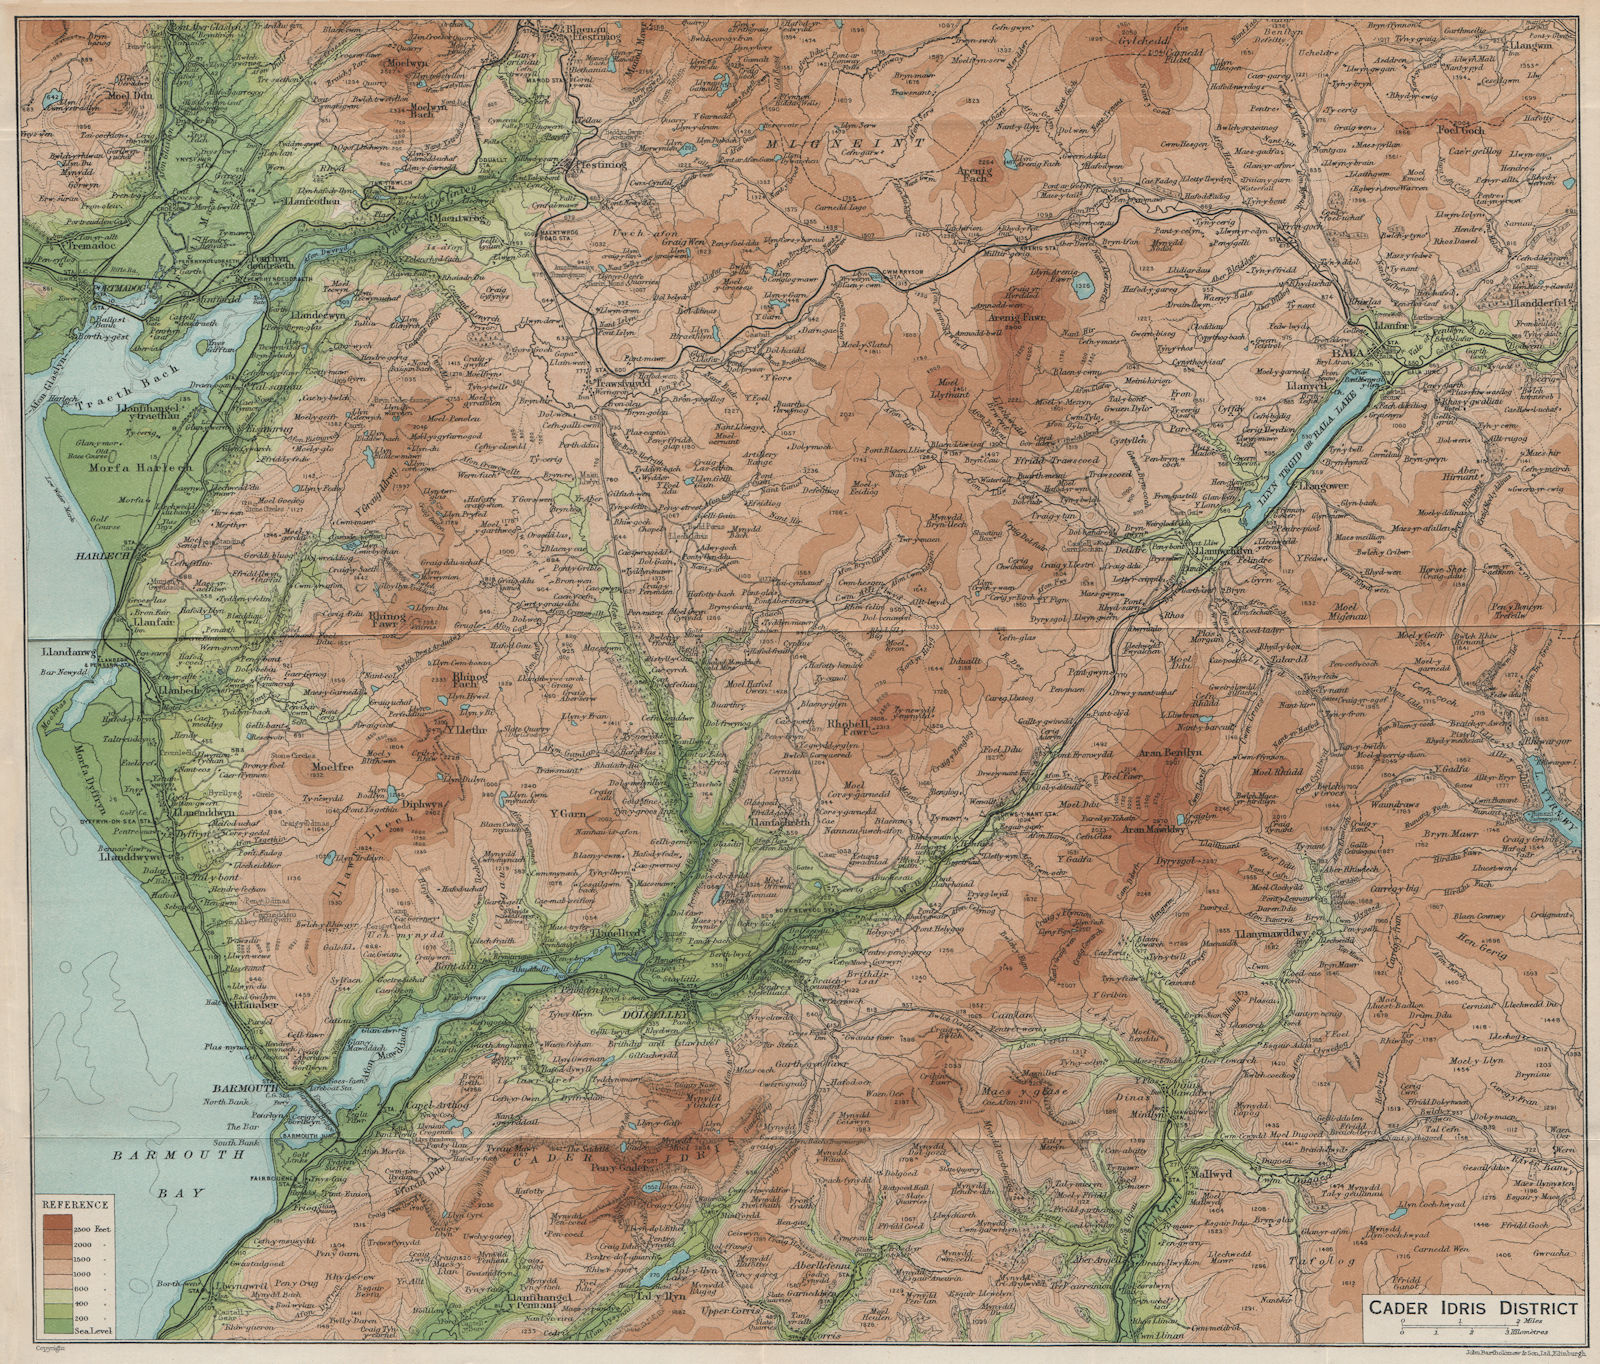 CADER IDRIS DISTRICT. Dollgellau Porthmadog Bala Barmouth. Snowdonia 1926 map